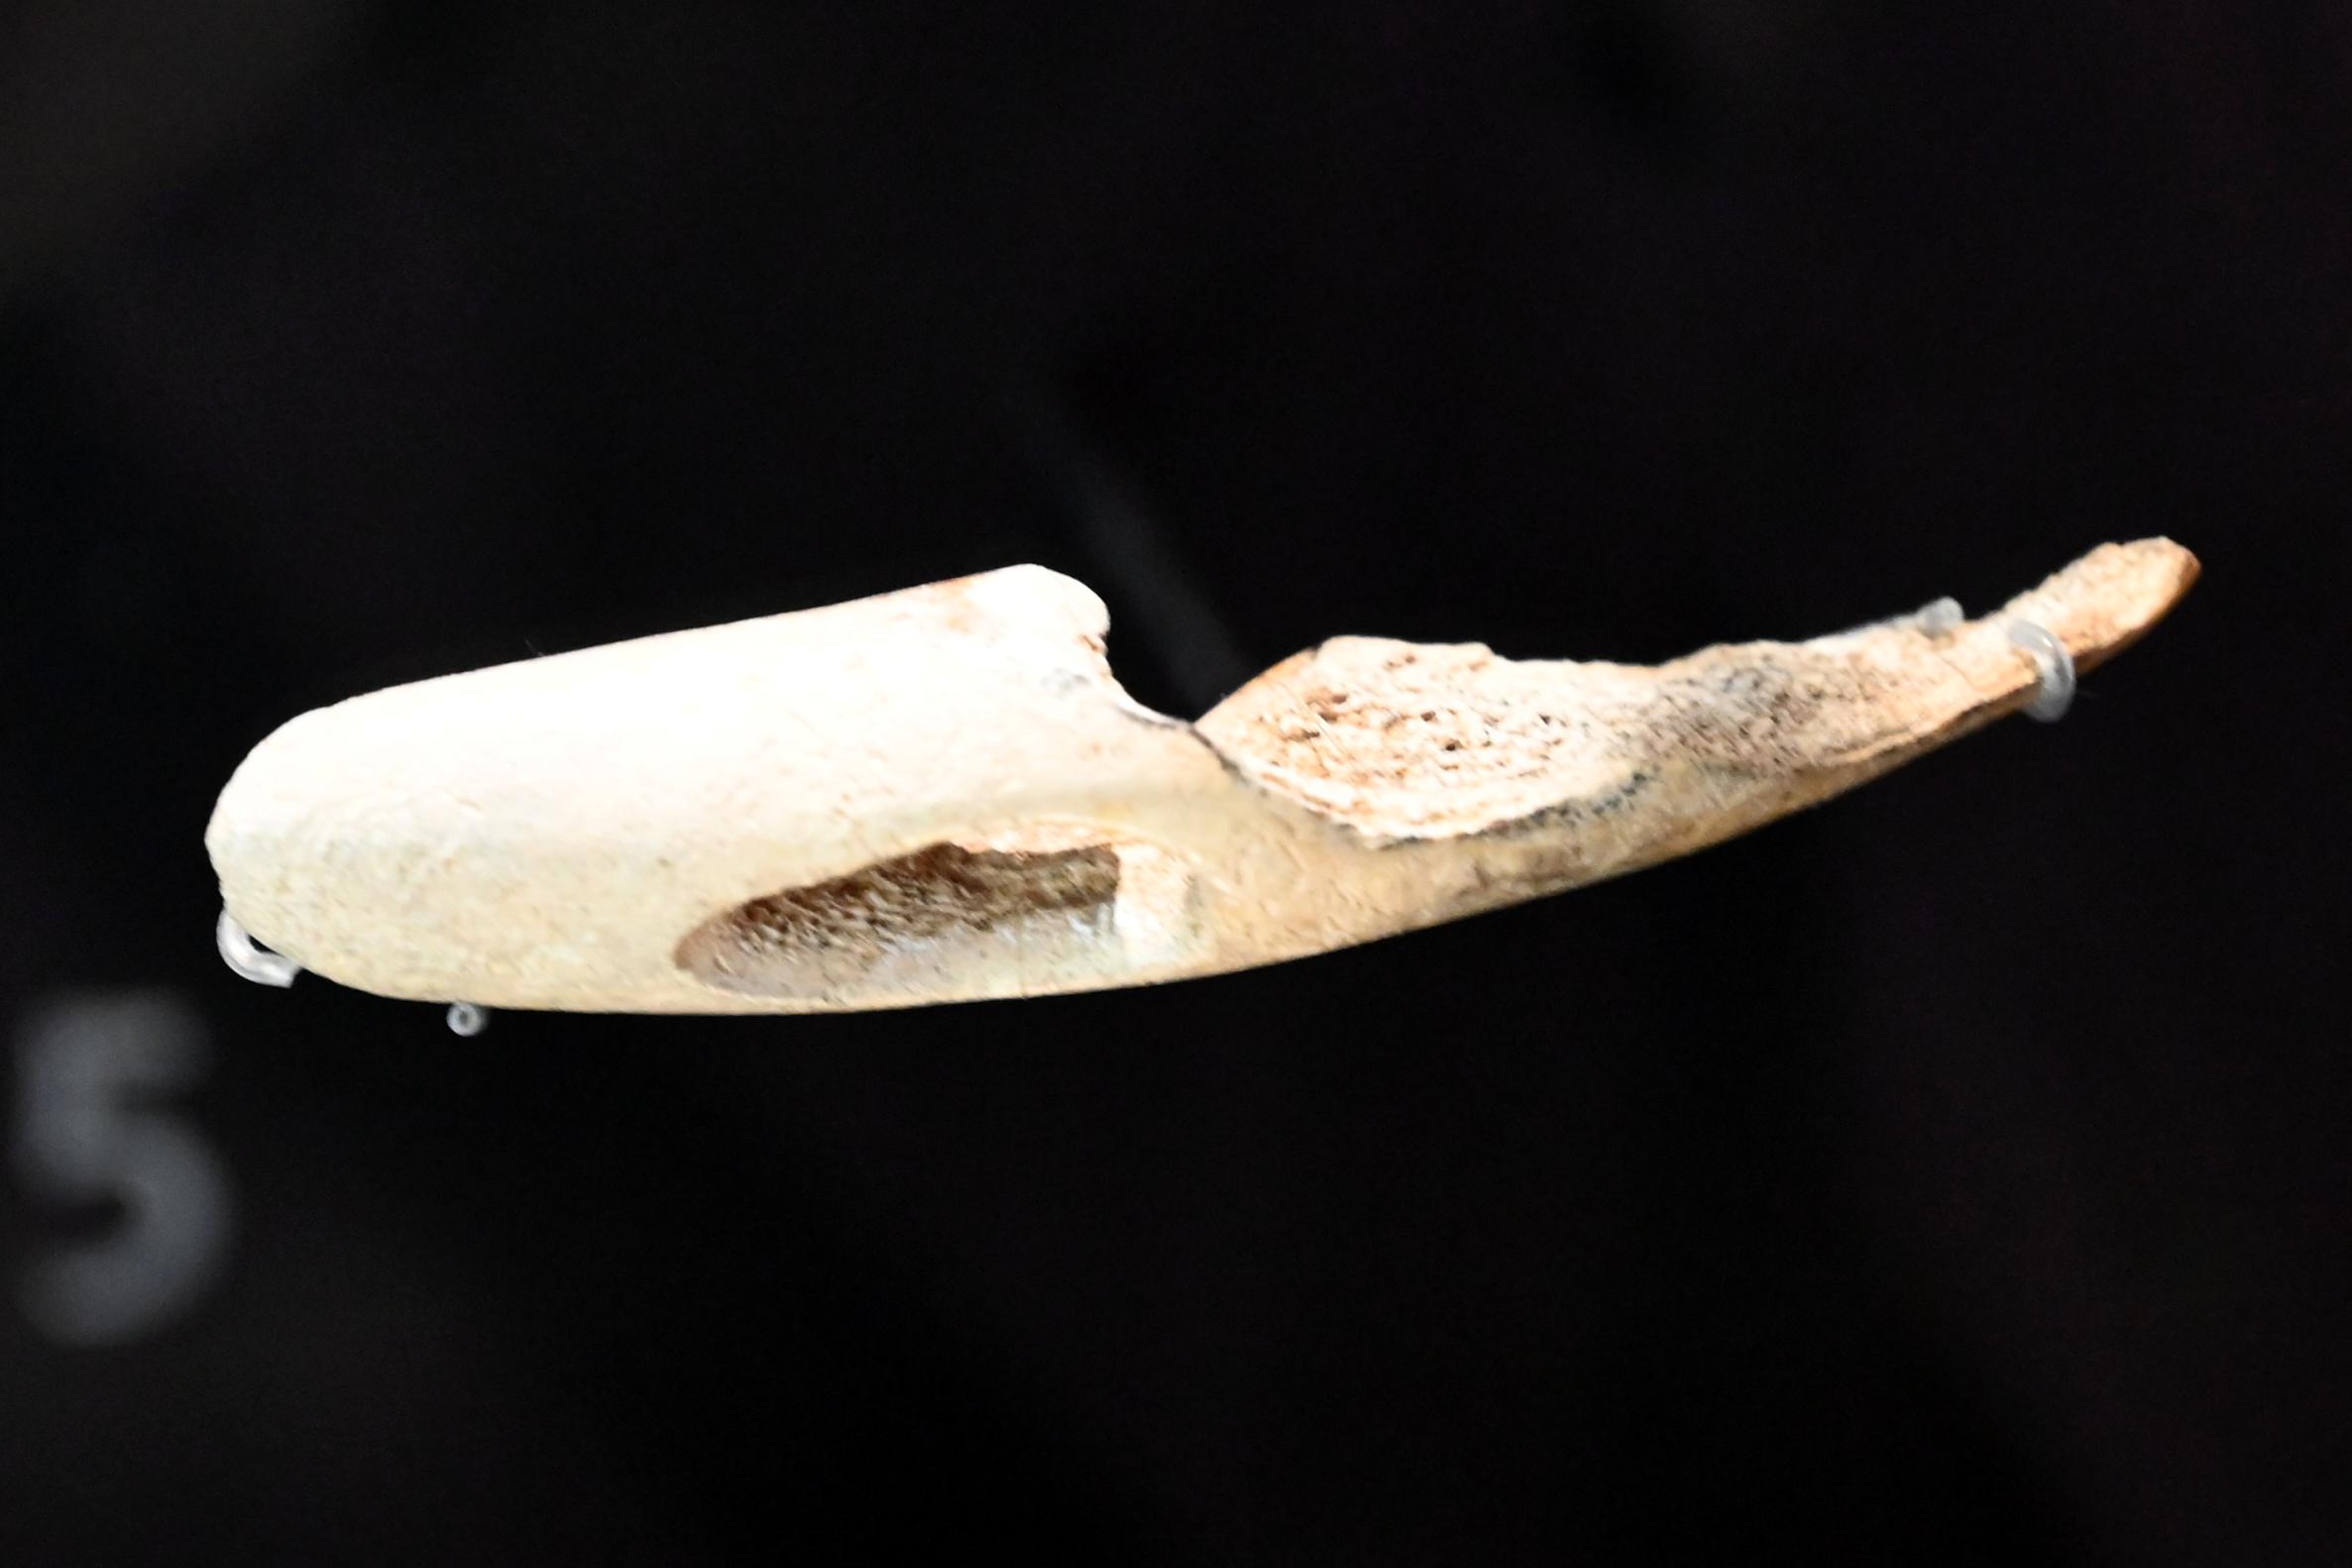 Gürtelhaken, Neolithikum (Jungsteinzeit), 5500 - 1700 v. Chr., 5500 - 5100 v. Chr., Bild 1/3